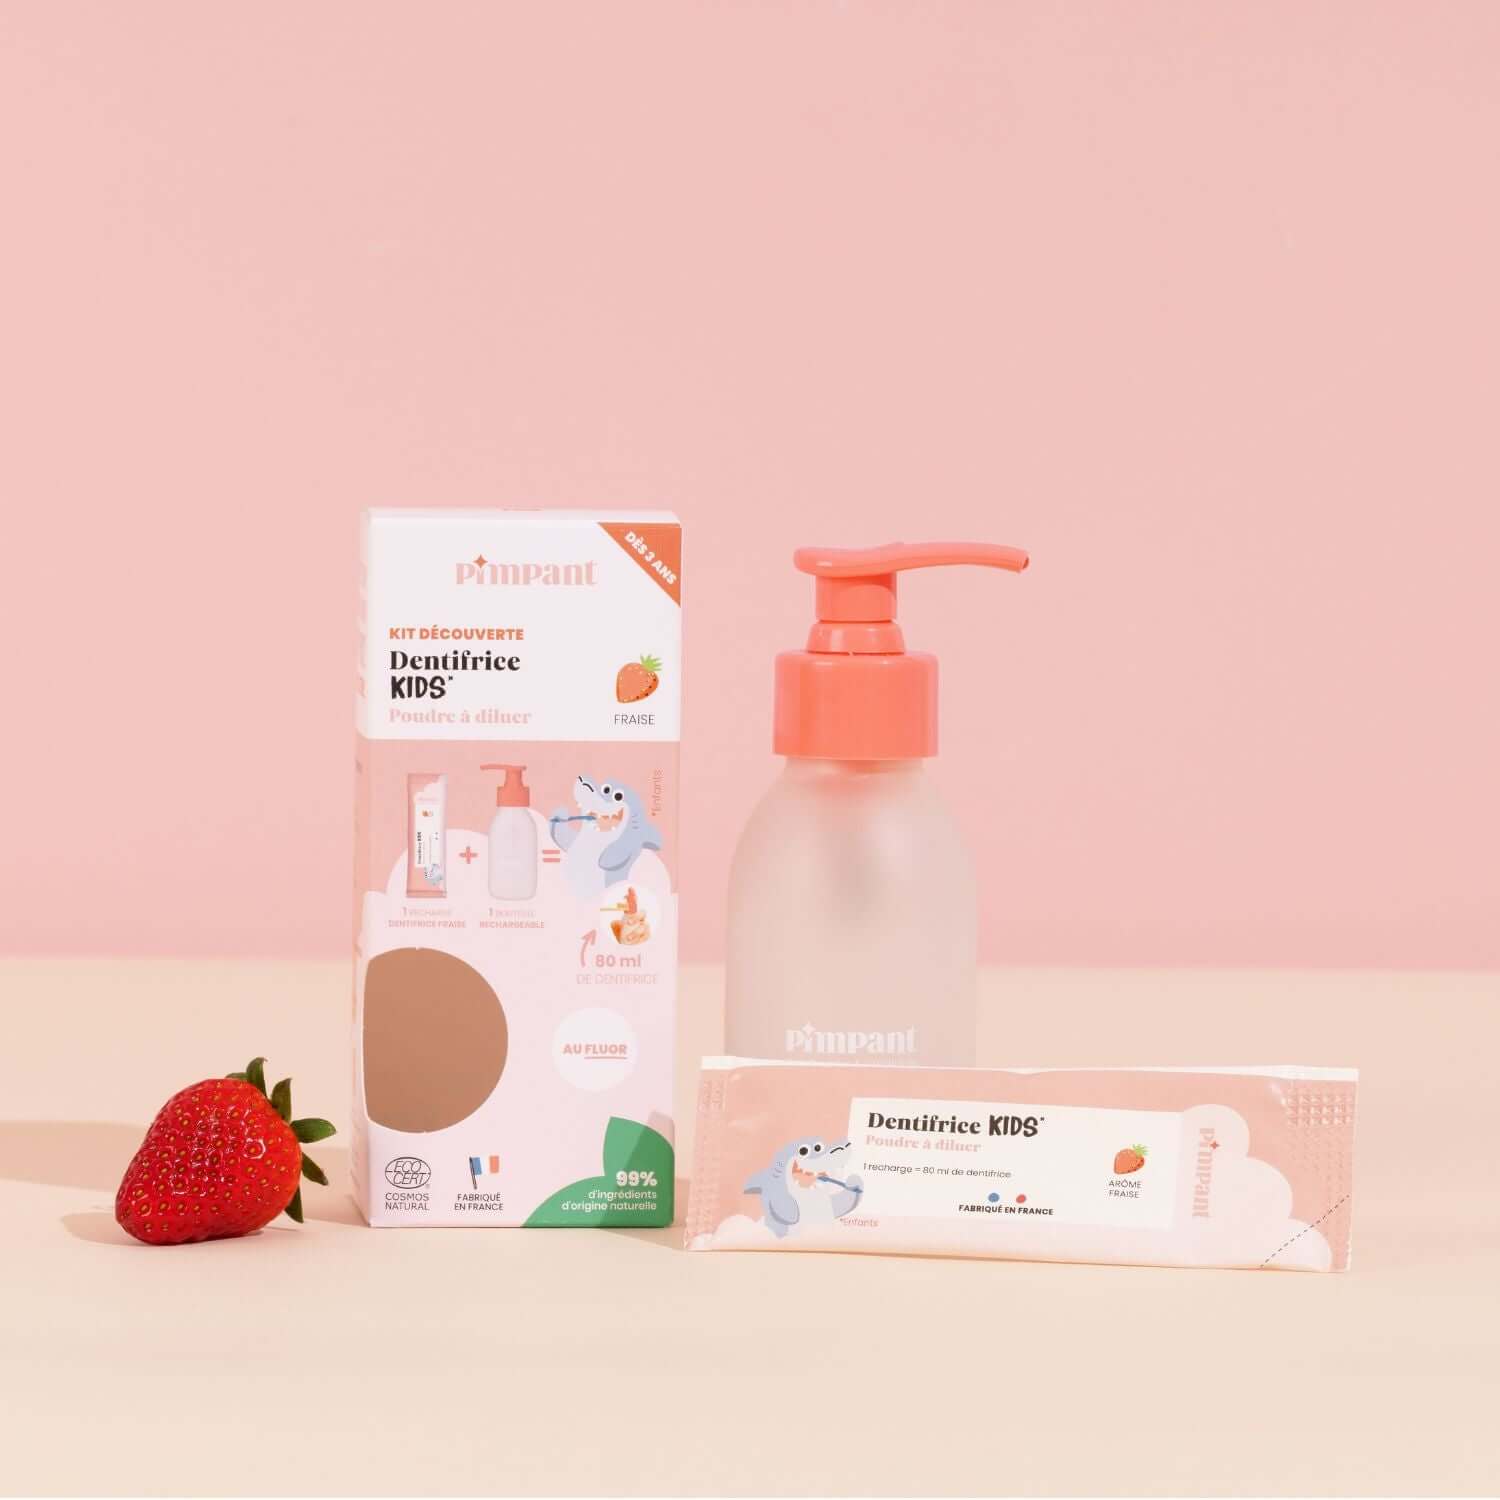 Erdbeer-Zahnpasta-Entdeckungsset für Kinder – Pimpant